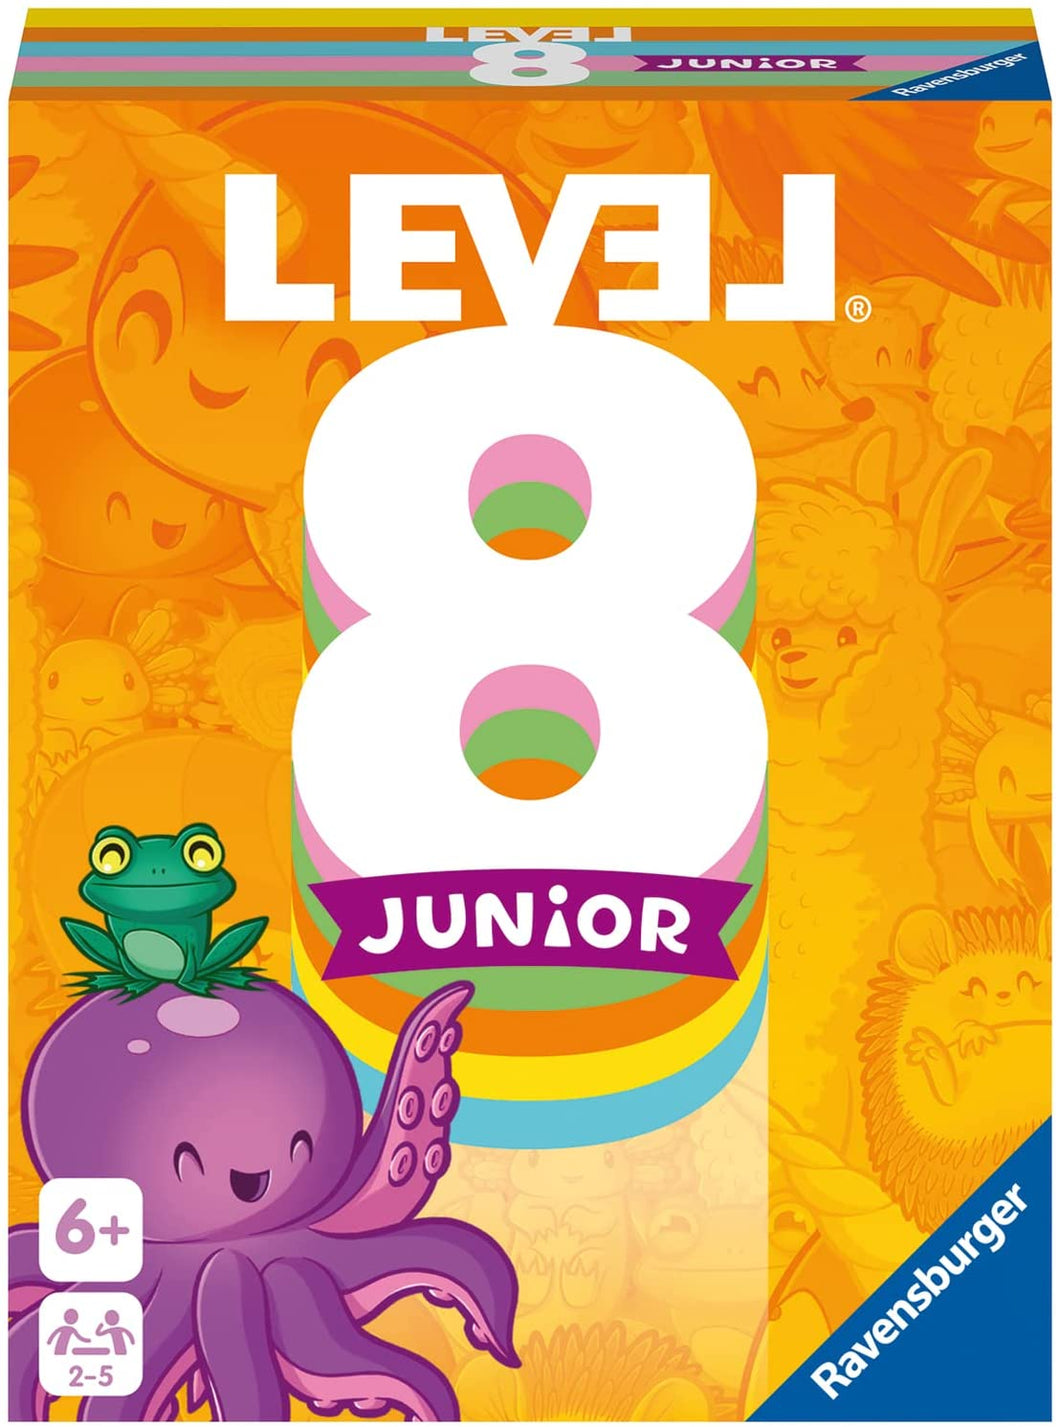 Level 8 – Junior *2022*